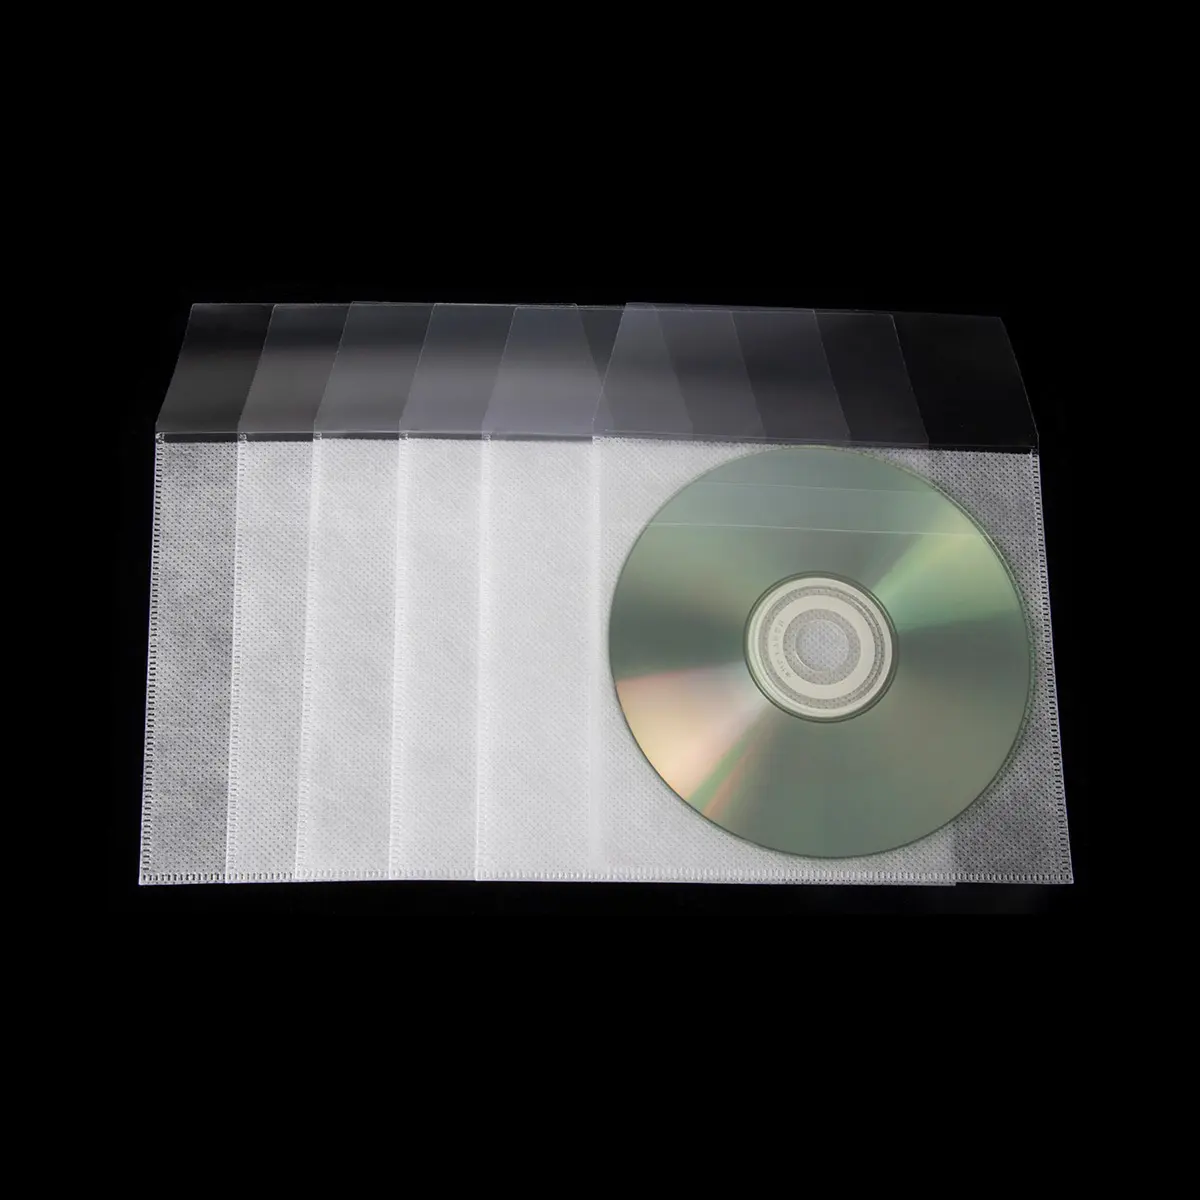 Sac CD scellé par tissu non tissé avec le disque DVD de la prise 2 d'aileron